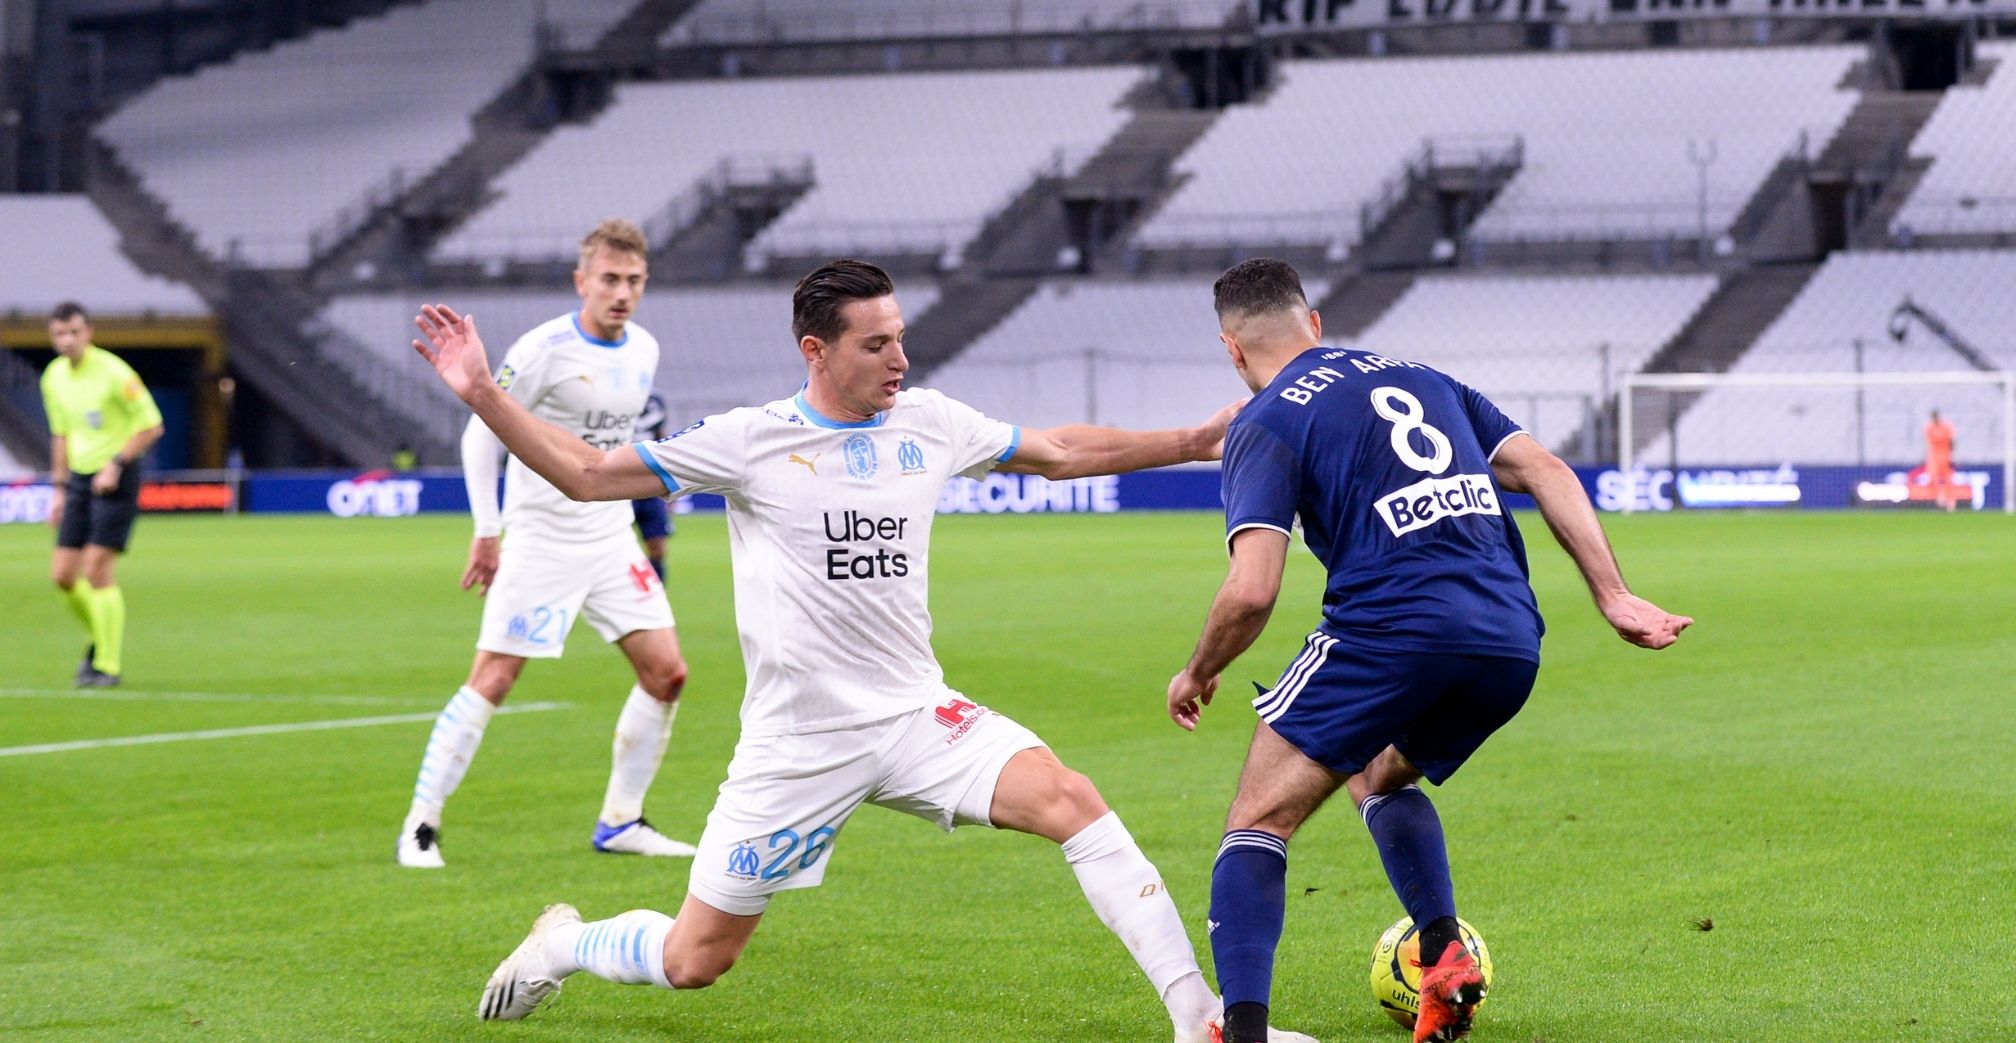 Bordeaux-Marseille preview: Larguet to lift OM again?